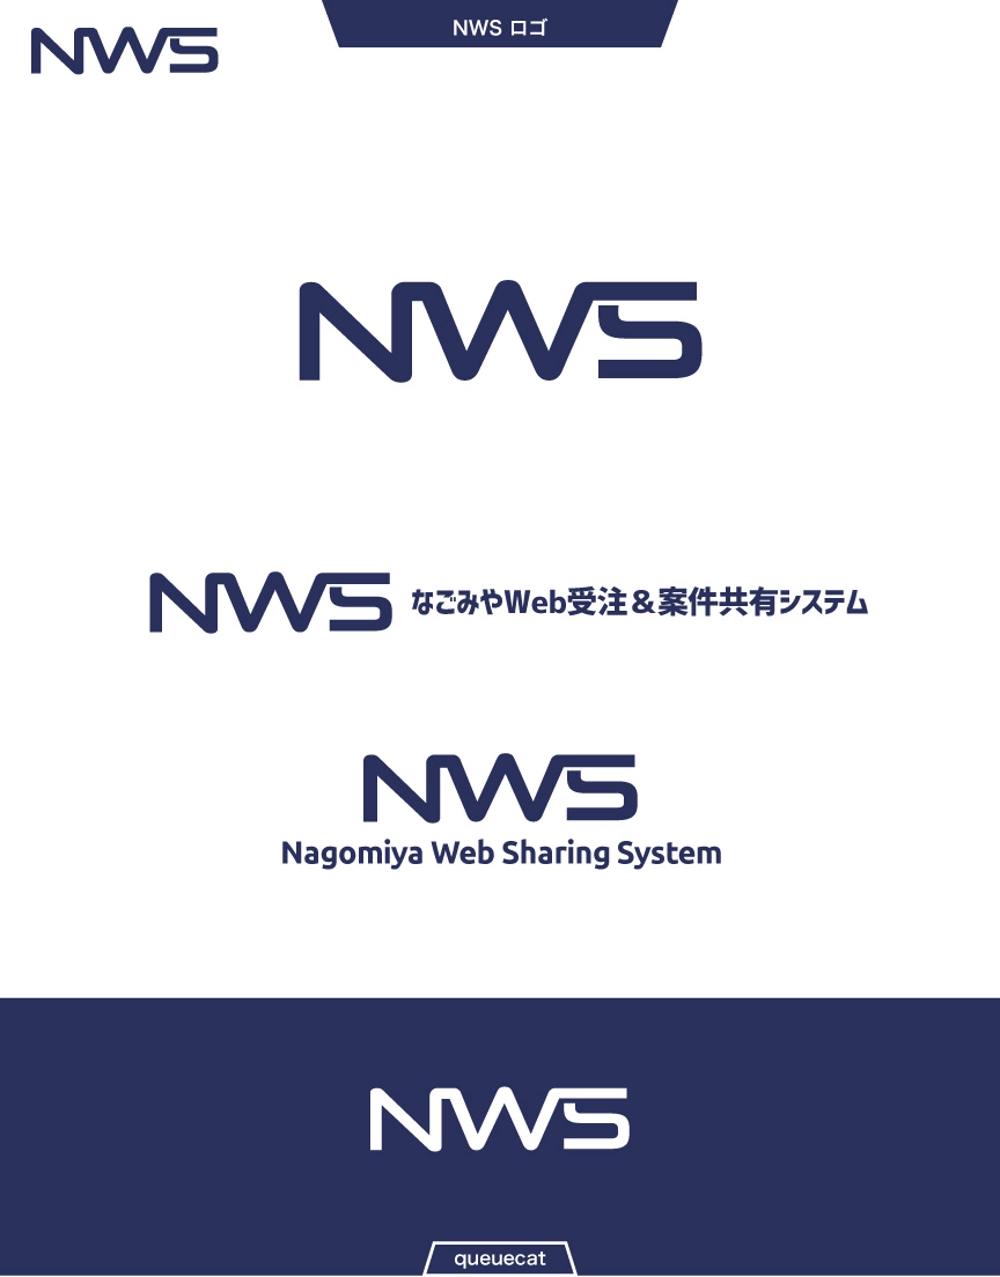 NWS2_1.jpg